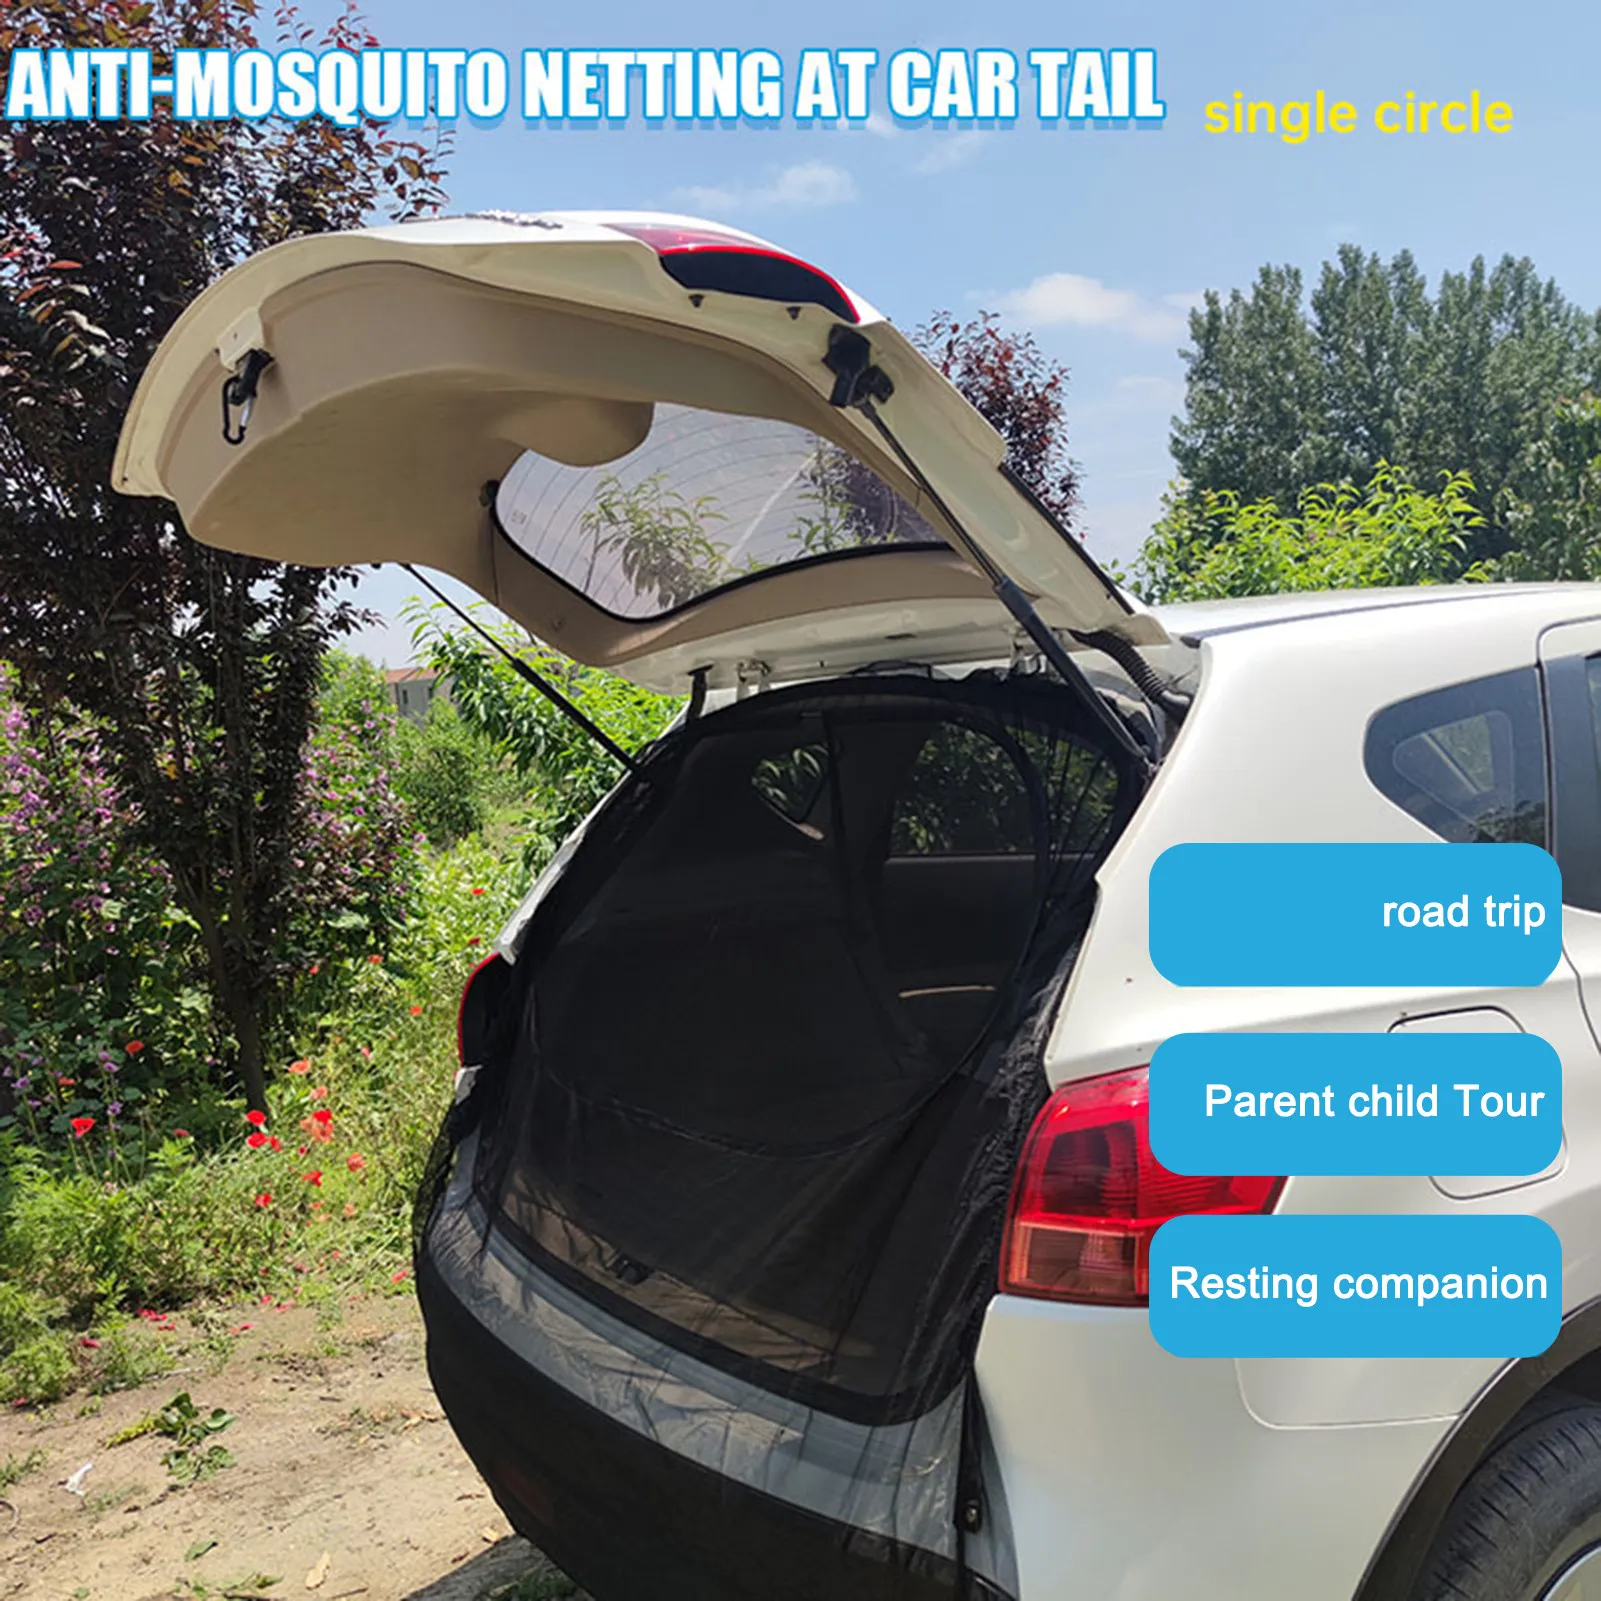 Мрежа от мухи, магнитна мрежа за задната врата на колата, защита от комари, магнитно усвояването, Ветрозащитный авто екран за самостоятелно шофиране на открито